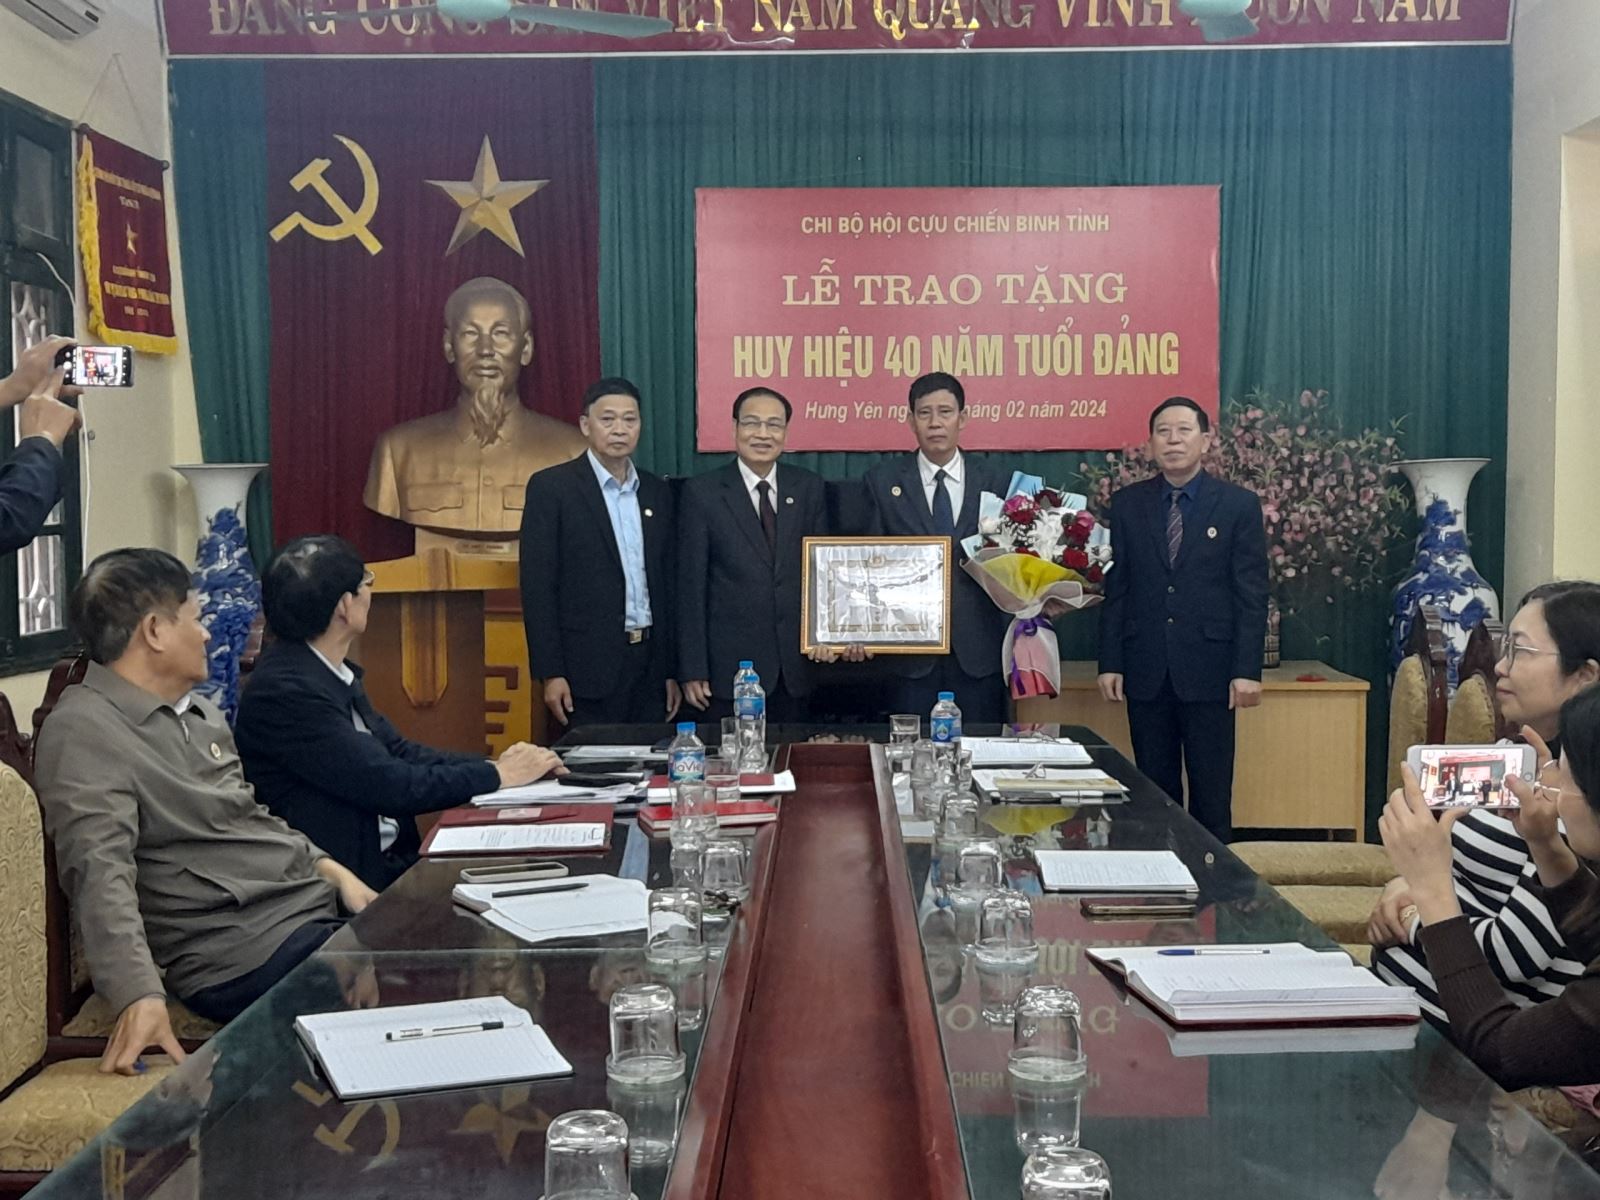 Trao Huy hiệu 40 năm tuổi Đảng cho đồng chí Phạm Tuấn Hùng - Phó Chủ tịch Hội Cựu chiến binh tỉnh